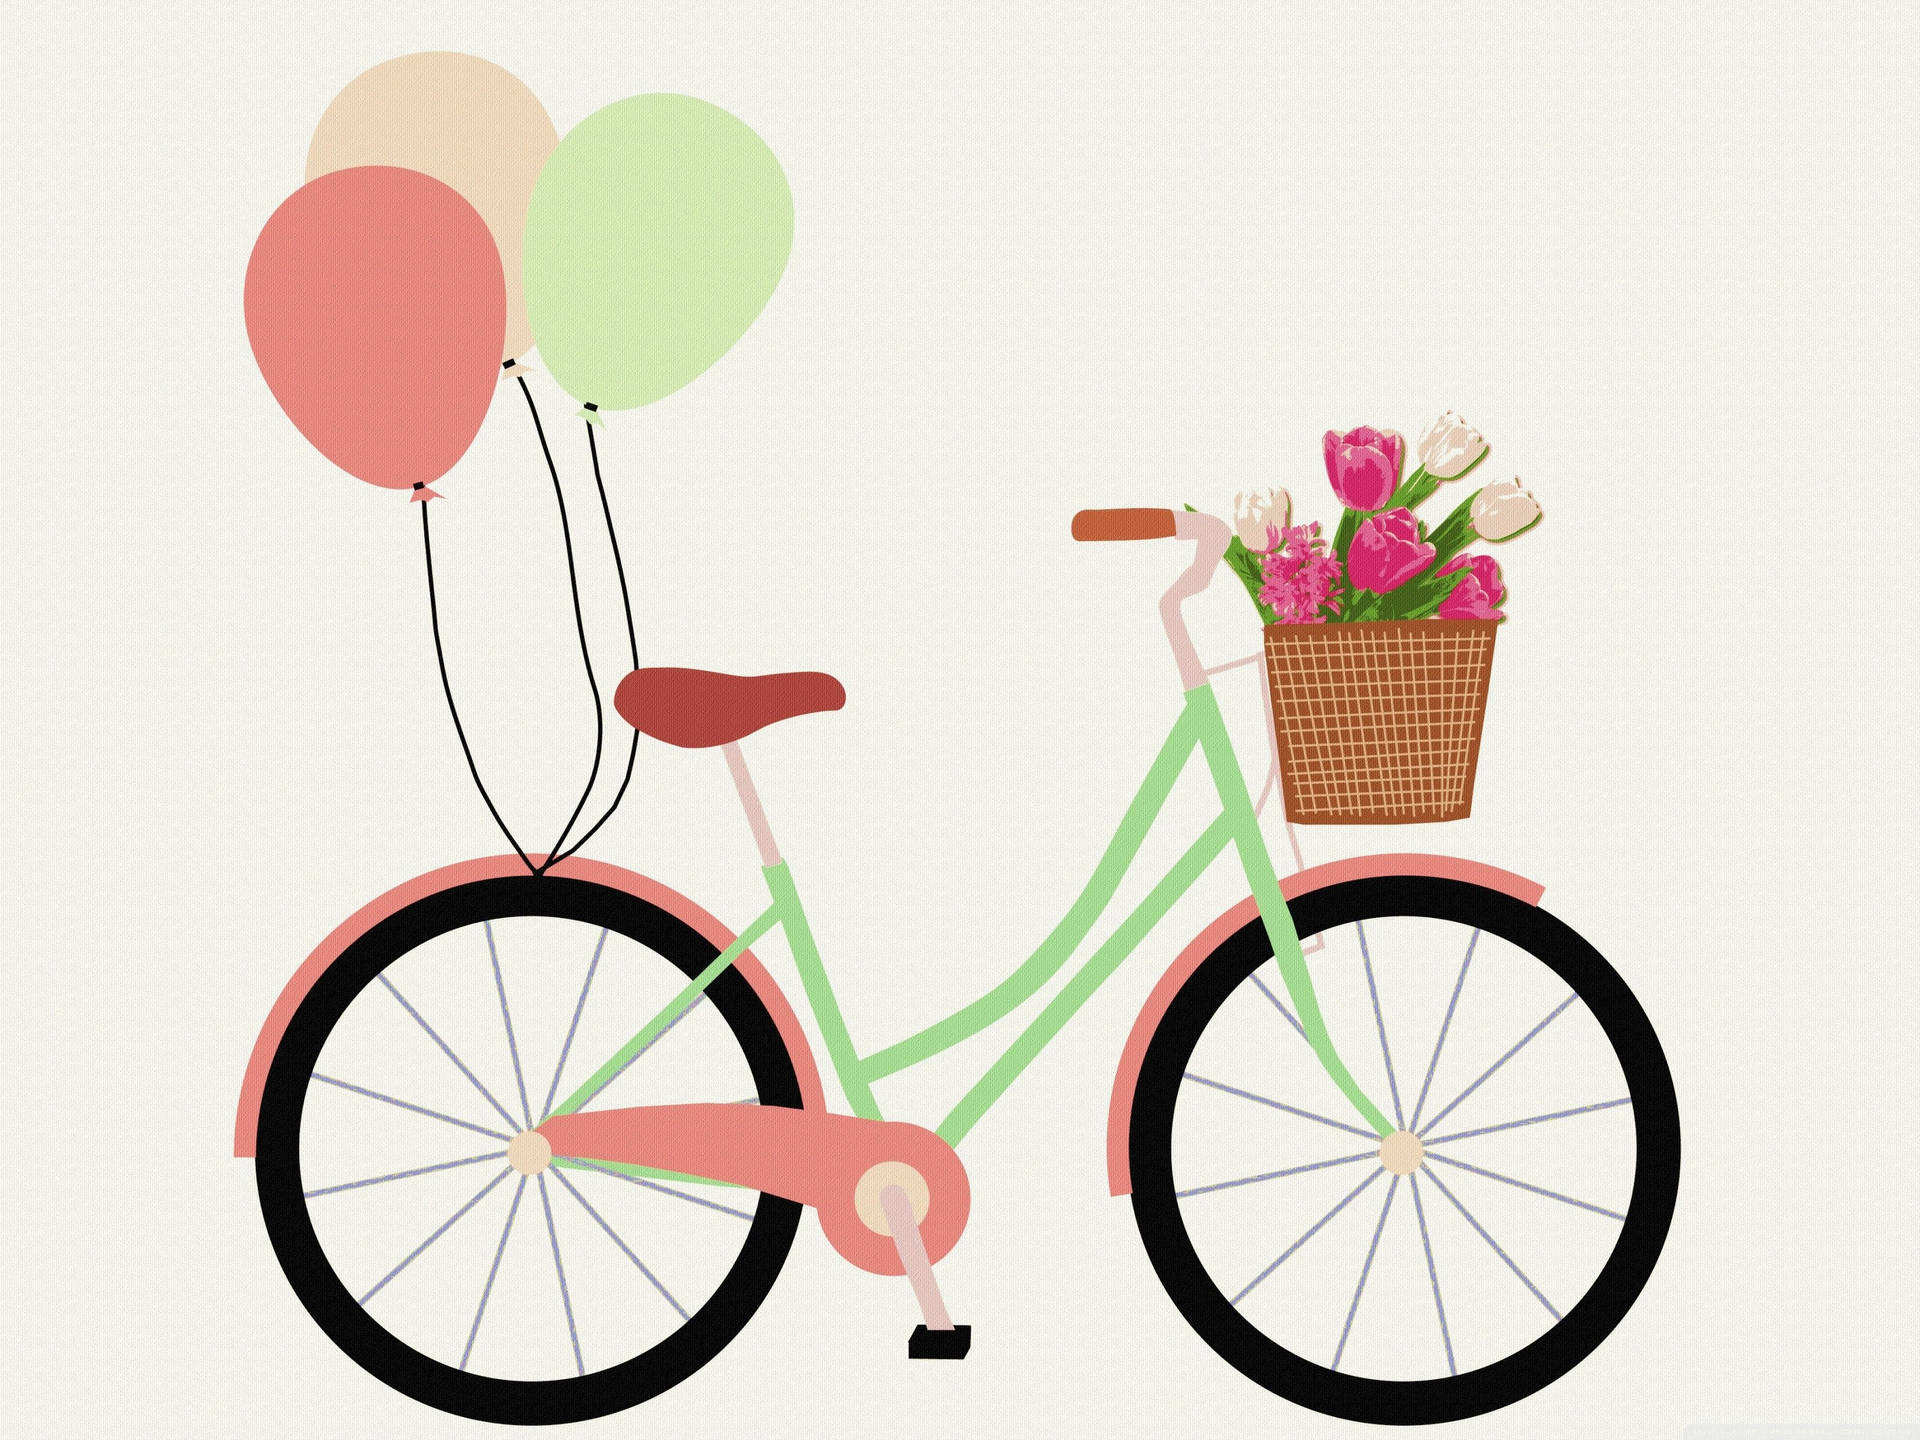 Bicicletajaponesa Em Rosa Pastel. Papel de Parede